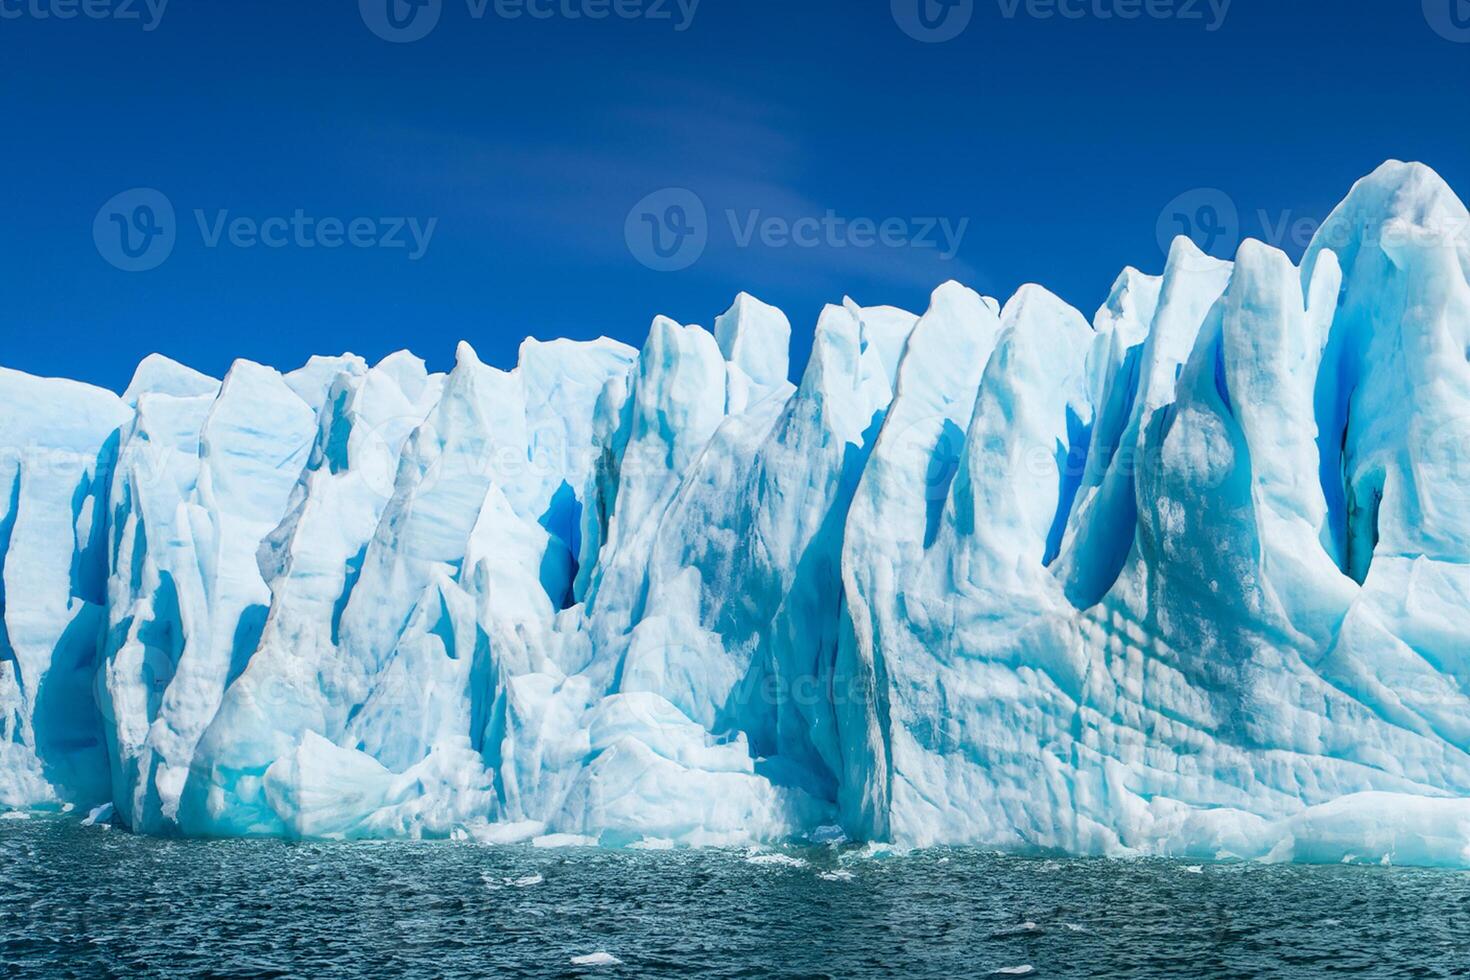 majestoso gelo falésias coroado de uma legal atmosfera, emoldurado de a lindo mar e céu, conjuração uma harmonioso panorama do da natureza gelado grandeza e oceânico esplendor foto